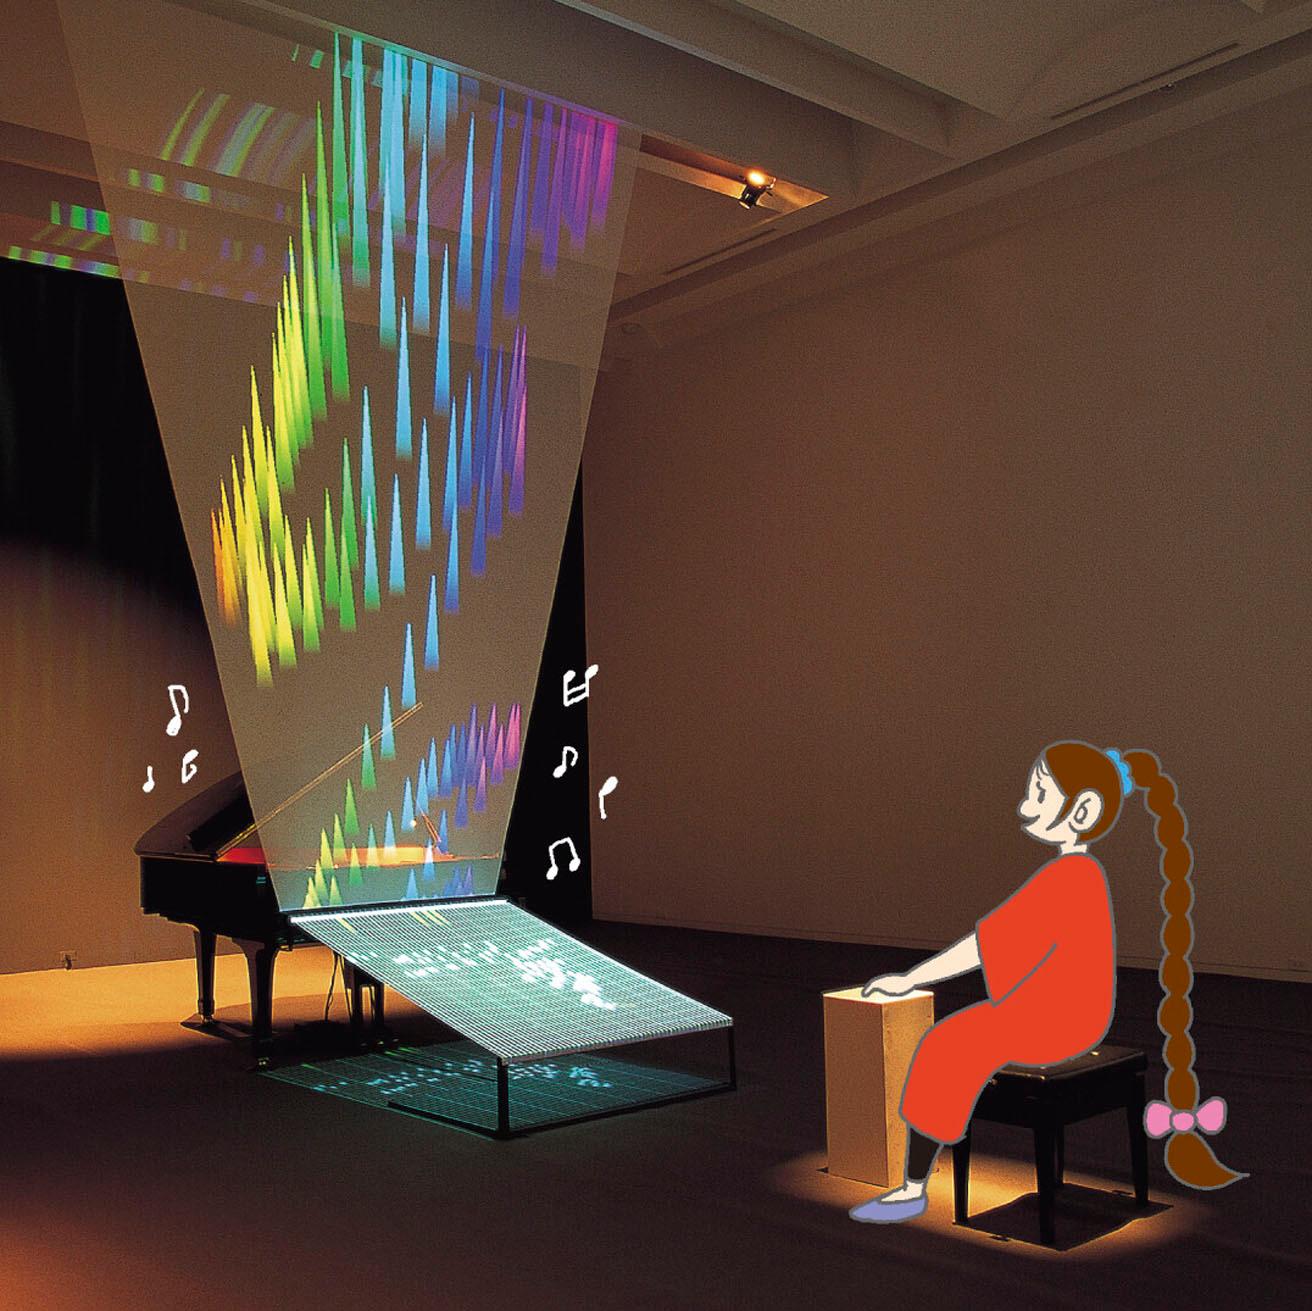 《映像装置としてのピアノ》（1995年）。ピアノとコンピューターグラフィックスが結合され、アコースティックな音とデジタル映像とでハーモニーを生み出す。楽器が演奏できずとも、楽譜が読めずとも、音楽を自由に奏でられるメディアアートを直に体験できる。音と映像と人の一体化をテーマとした岩井の代表作。2000年以降、展示されていなかった作品が20数年ぶりに蘇る！
